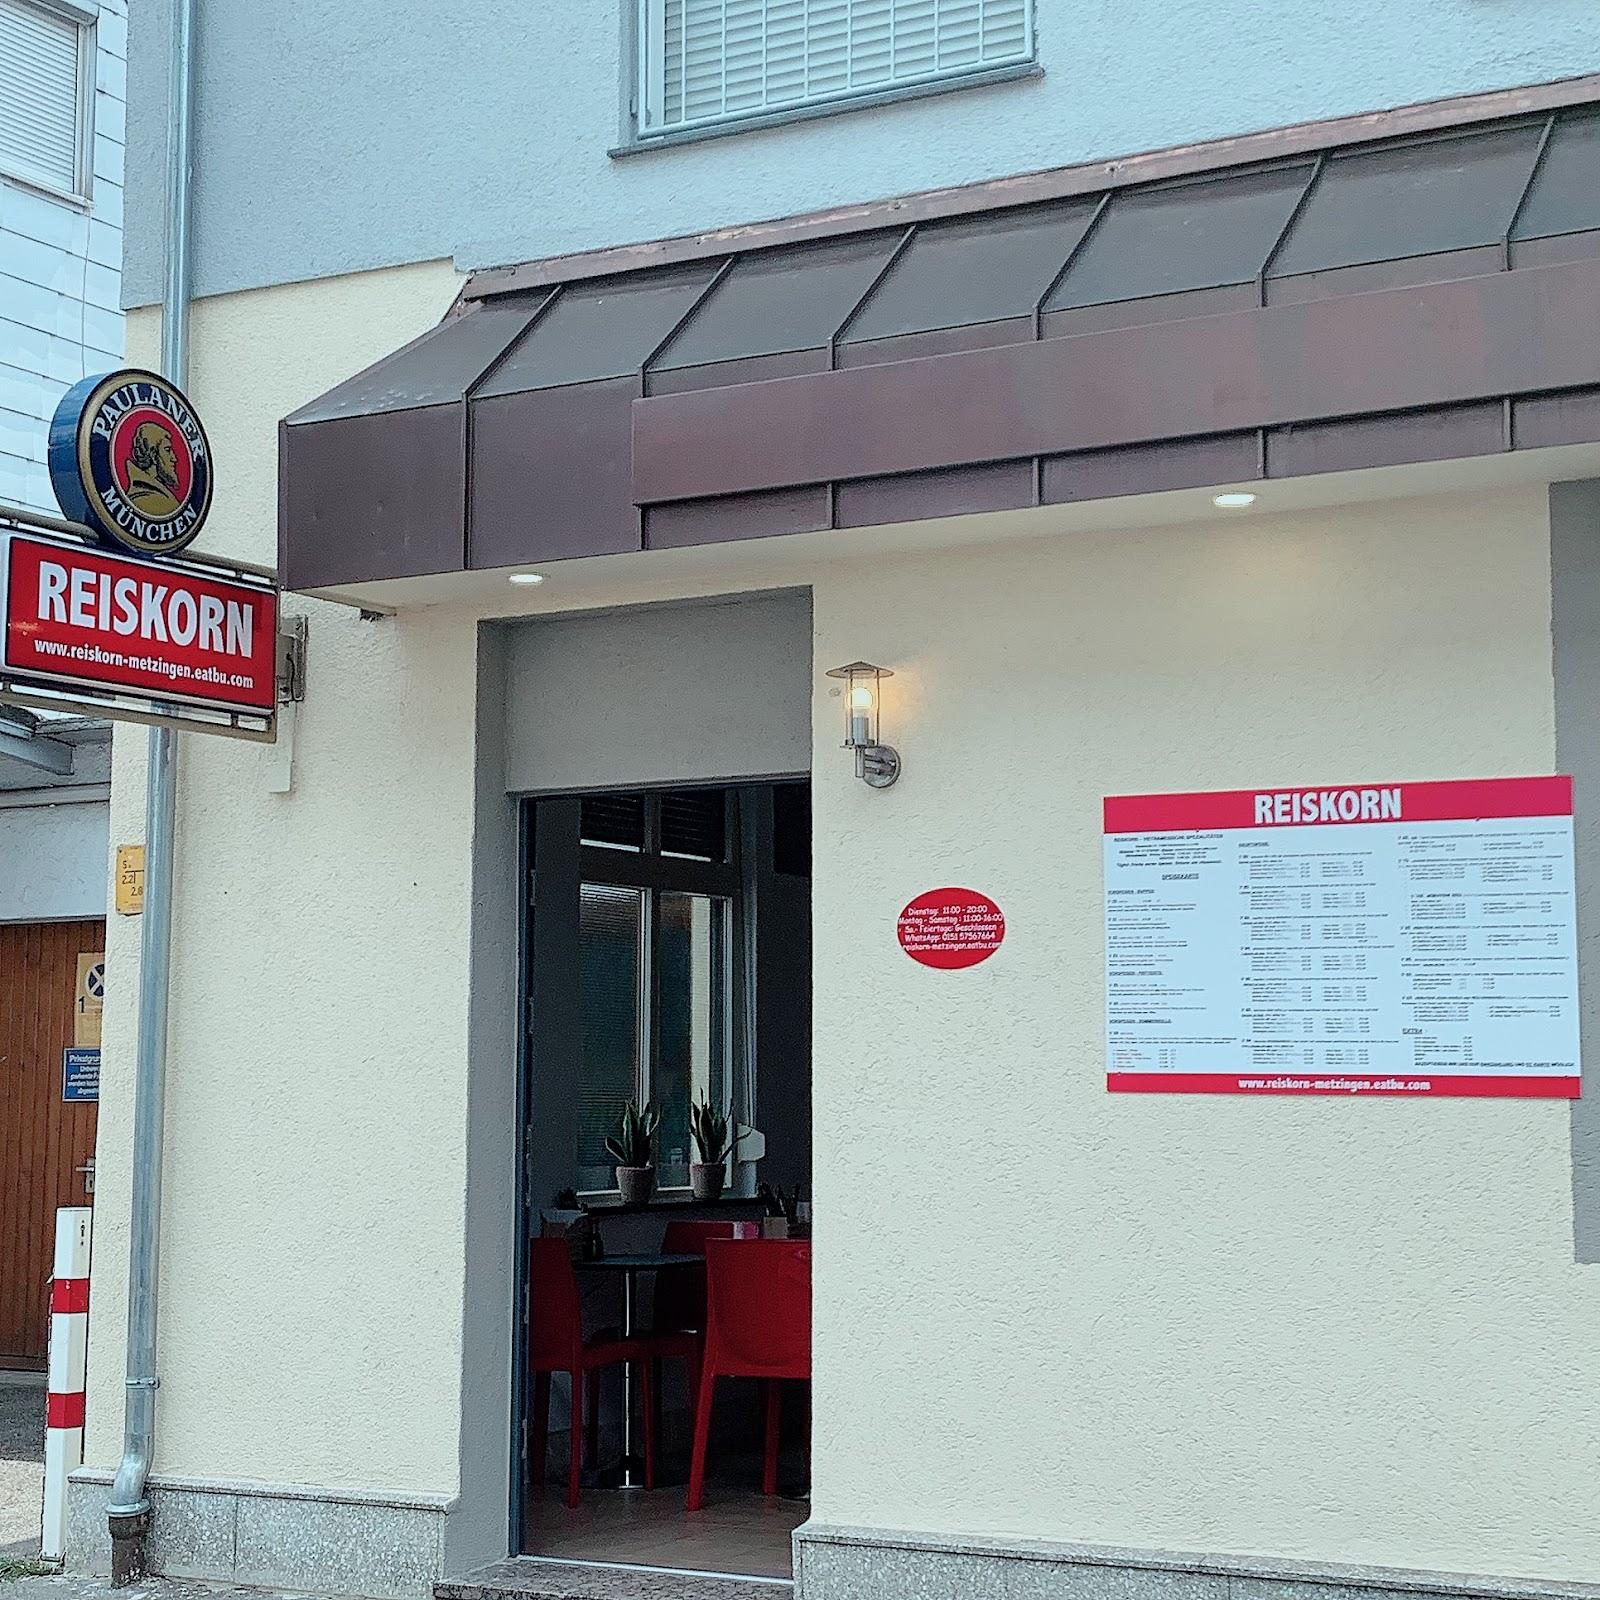 Restaurant "REISKORN - VIETNAMESISCHE KÜCHE" in Reichenbach an der Fils